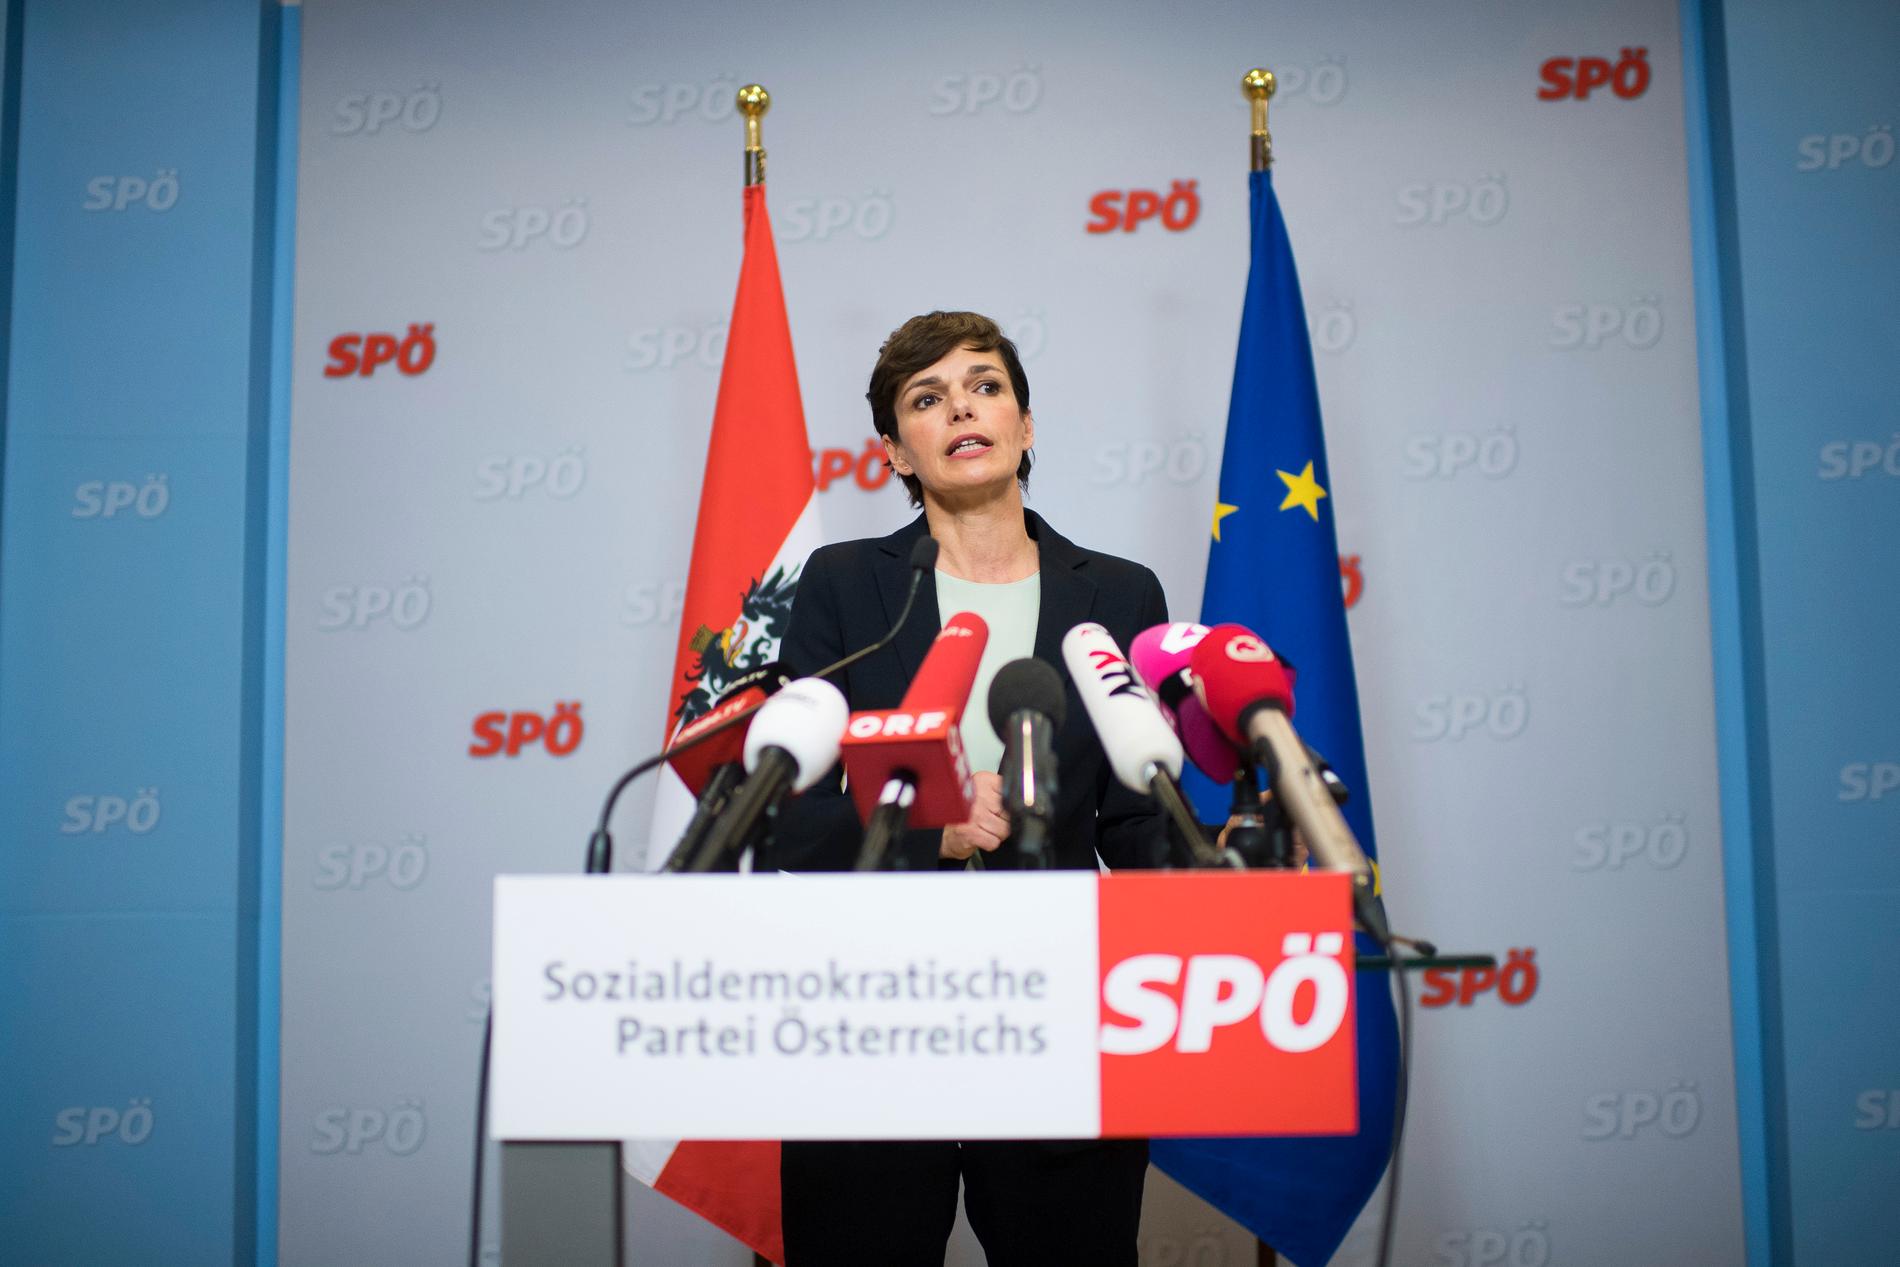 Socialdemokraternas nya partiledare Pamela Rendi-Wagner har haft motvind, och opinionssiffrorna ser sämre ut än valresultatet 2017. Arkivbild.